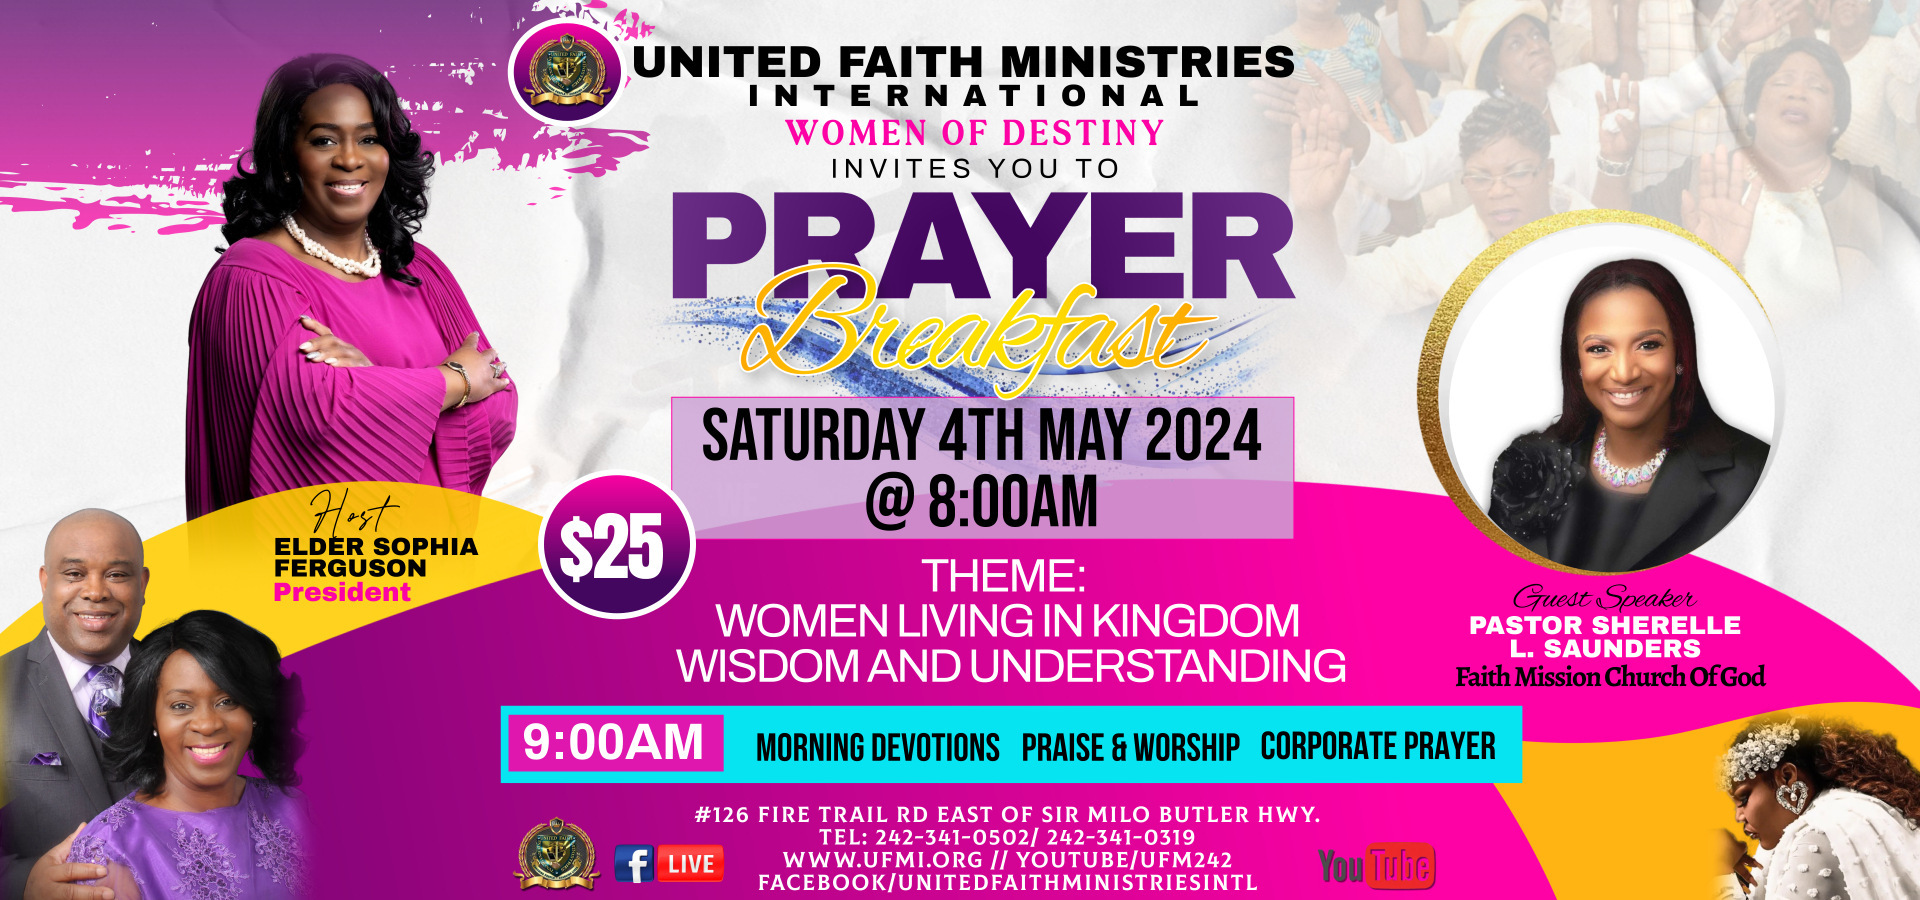 UFMI WOD Prayer BreakFast Flyer 2024 WBS